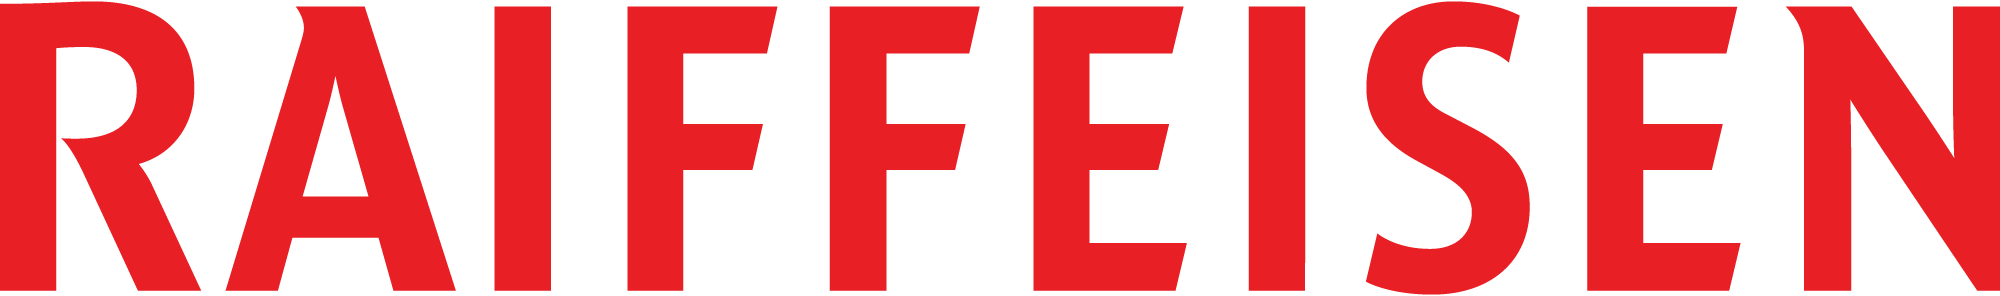 Raiffeisen_Logo_RGBpng